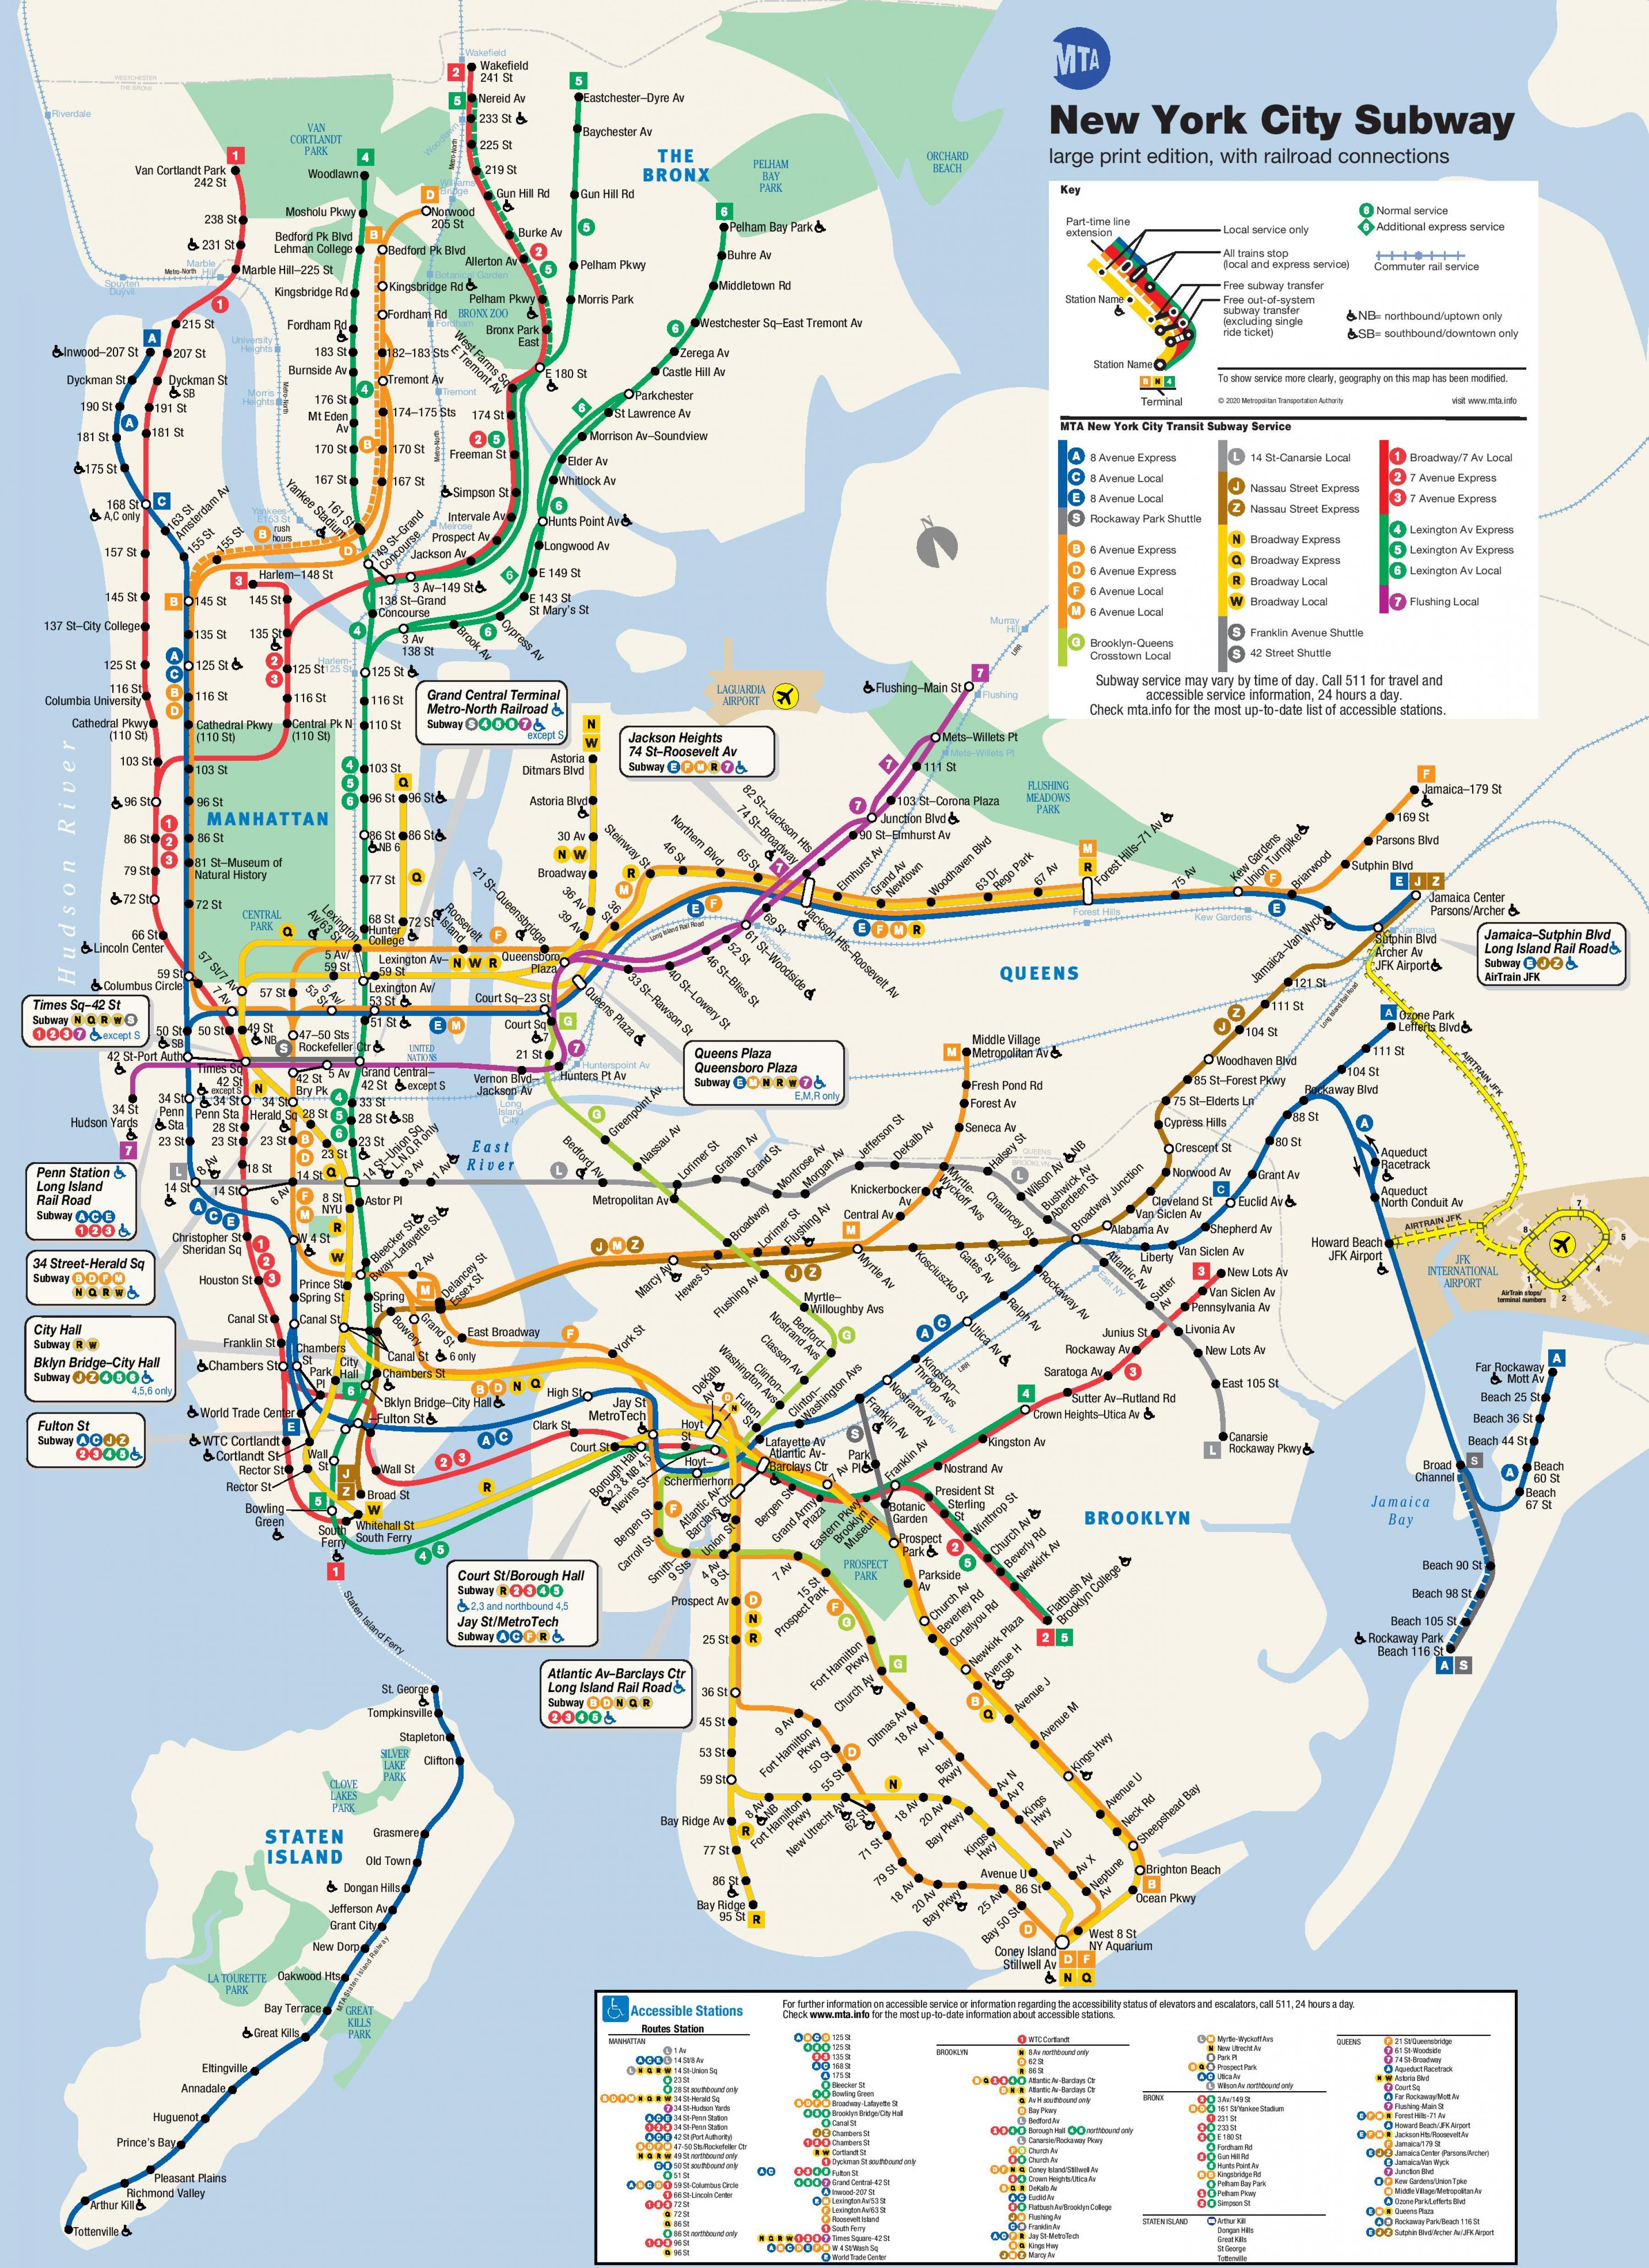 mta-subway-map-new-york-mta-subway-map-new-york-usa